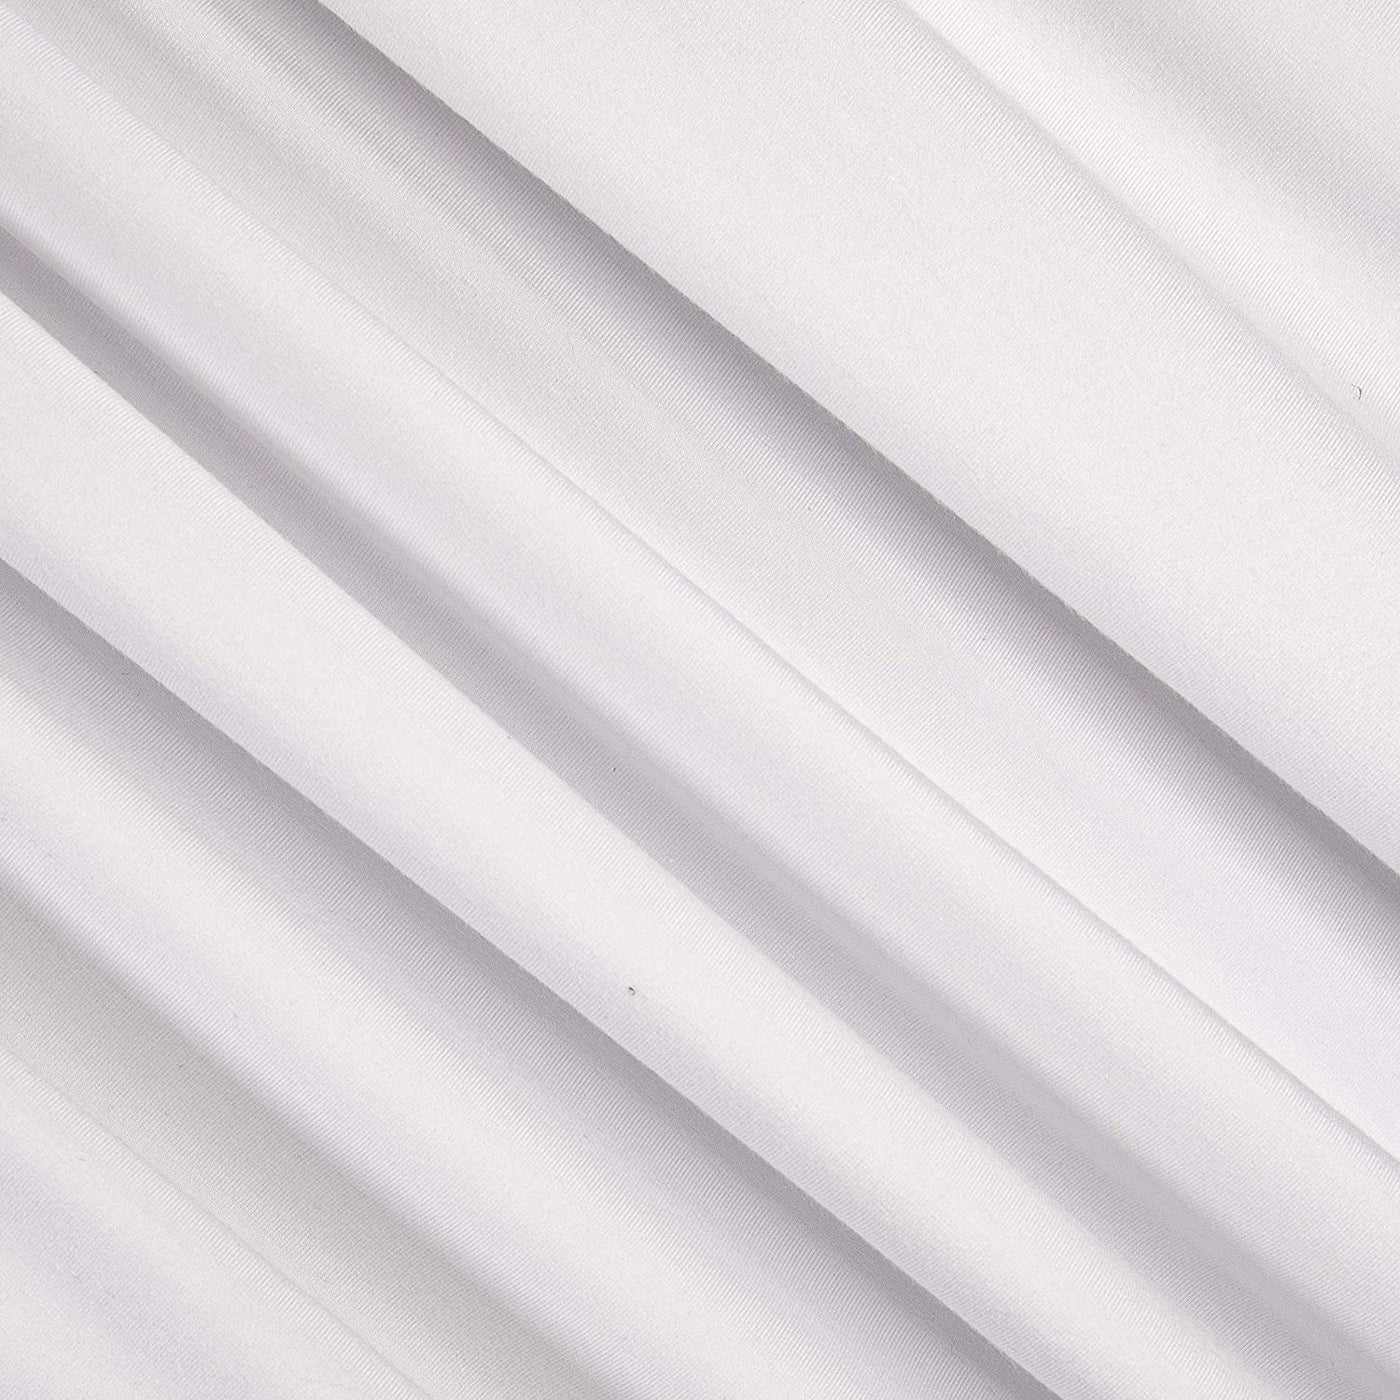 FabricLA Viscose Spandex Jersey Knit Fabric | White PFP - FabricLA.com